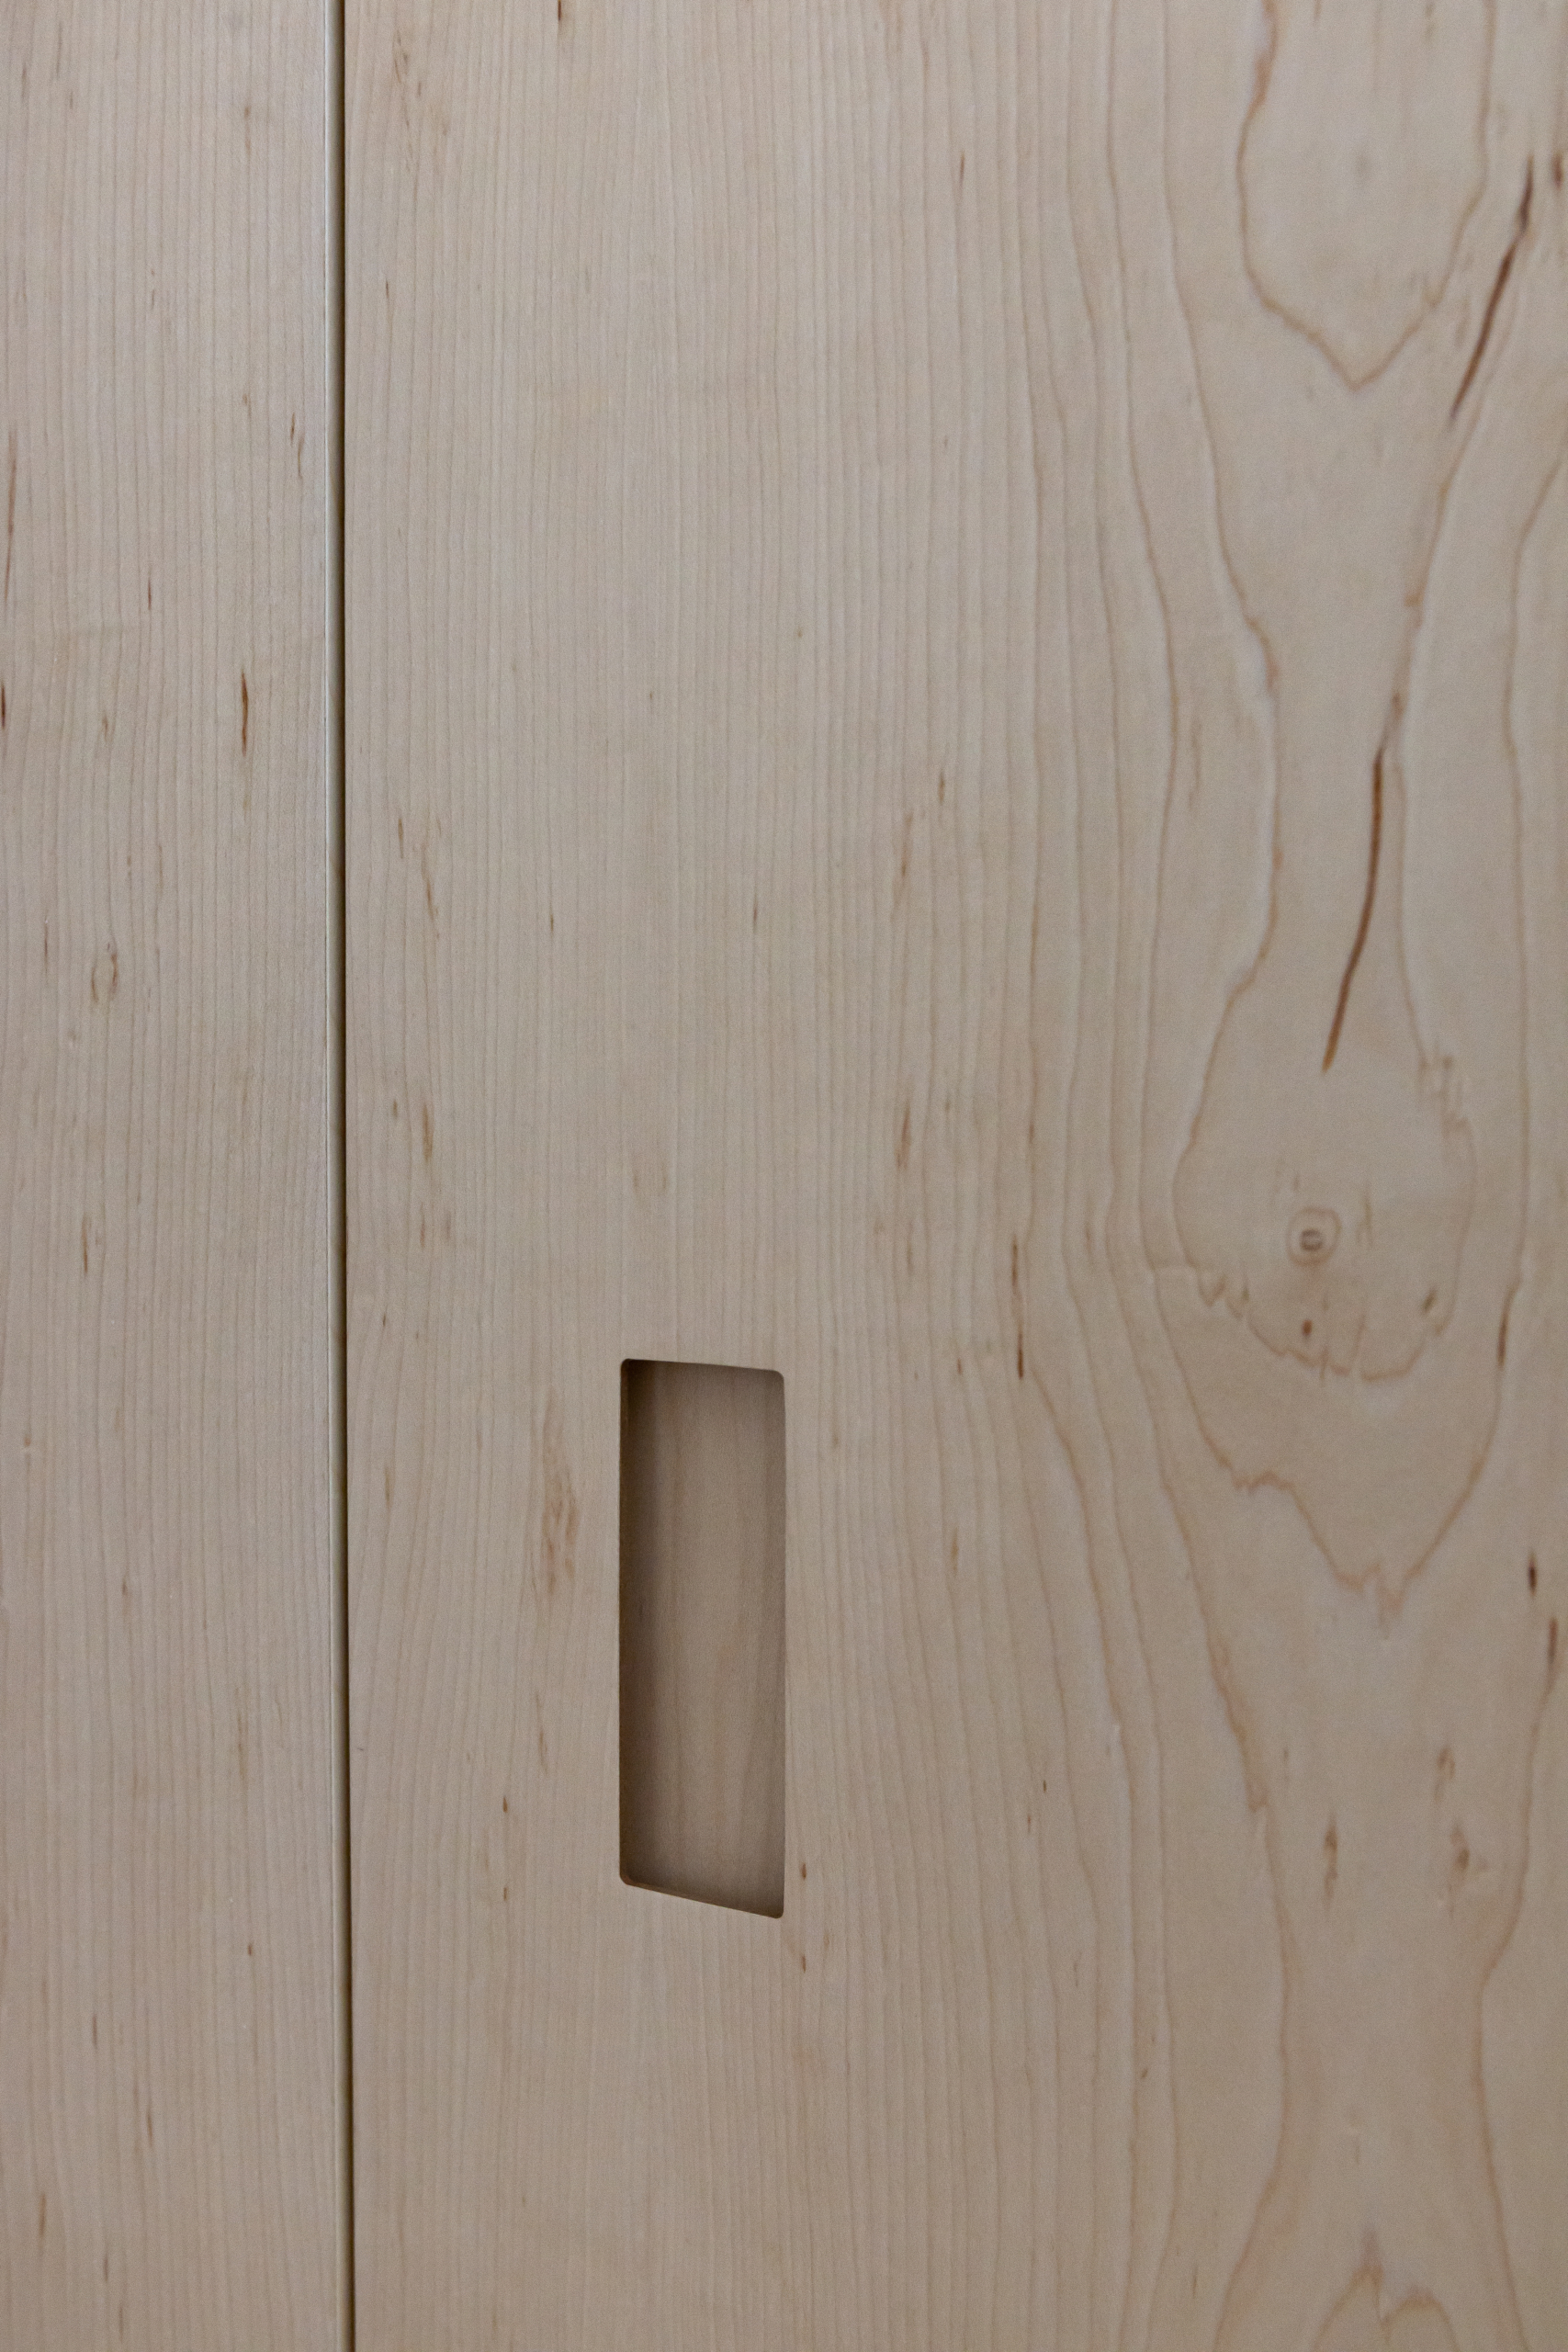 Diseño de puerta con avabado en madera